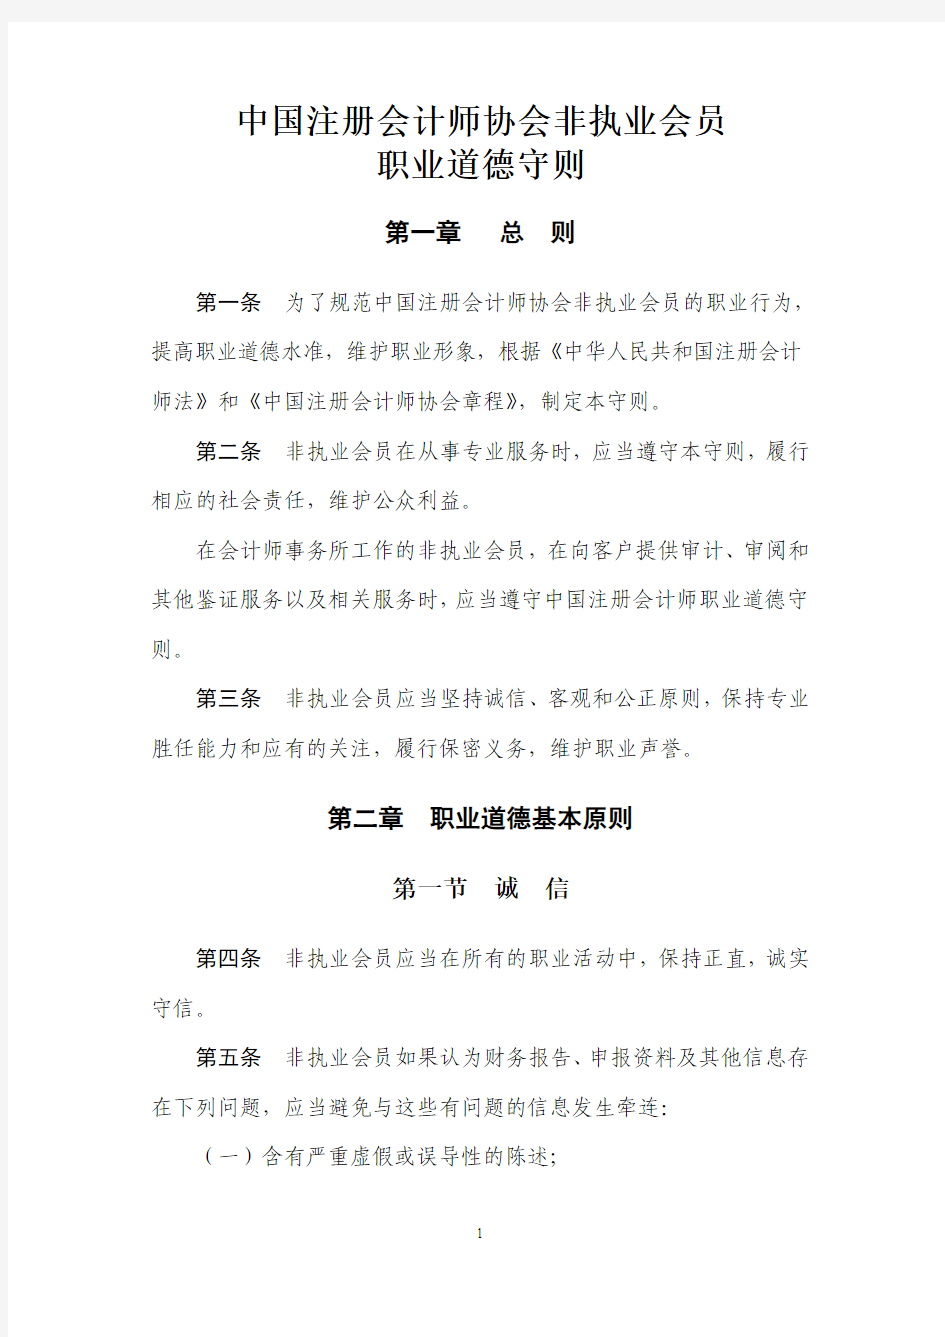 中国注册会计师协会非执业会员职业道德守则-cicpa